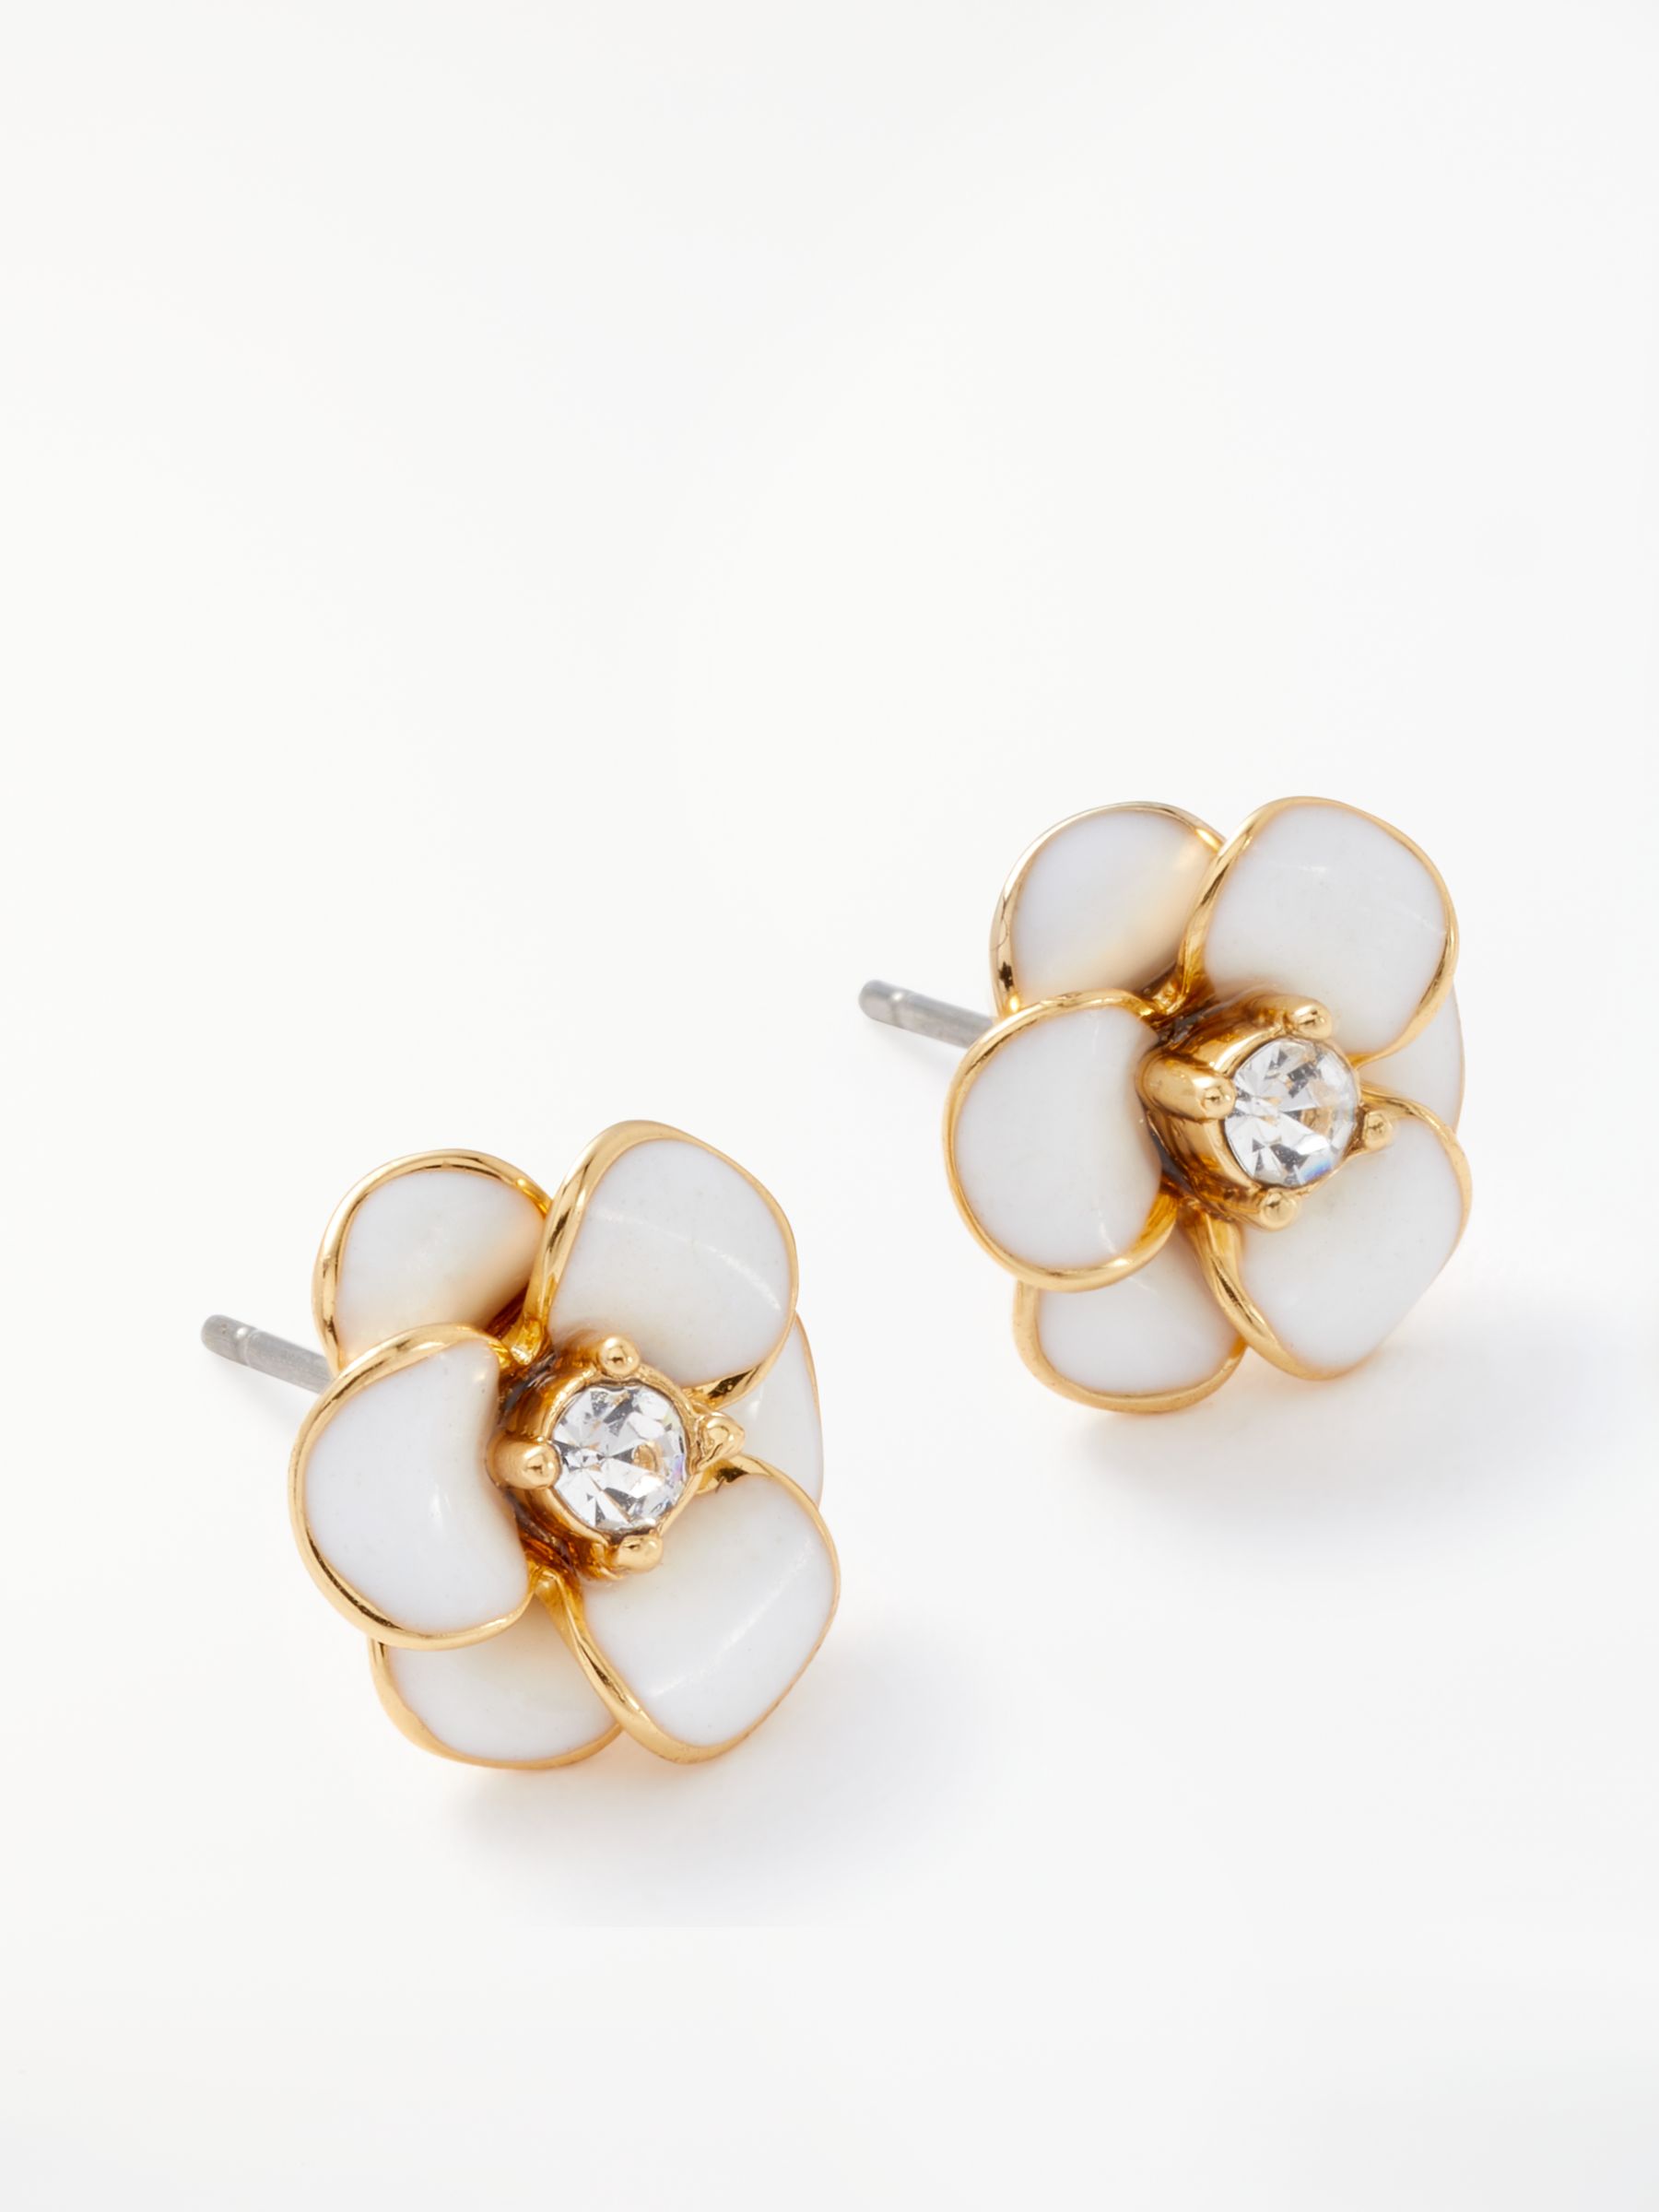 kate spade new york Flower Stud Earrings, Gold/White at John Lewis ...